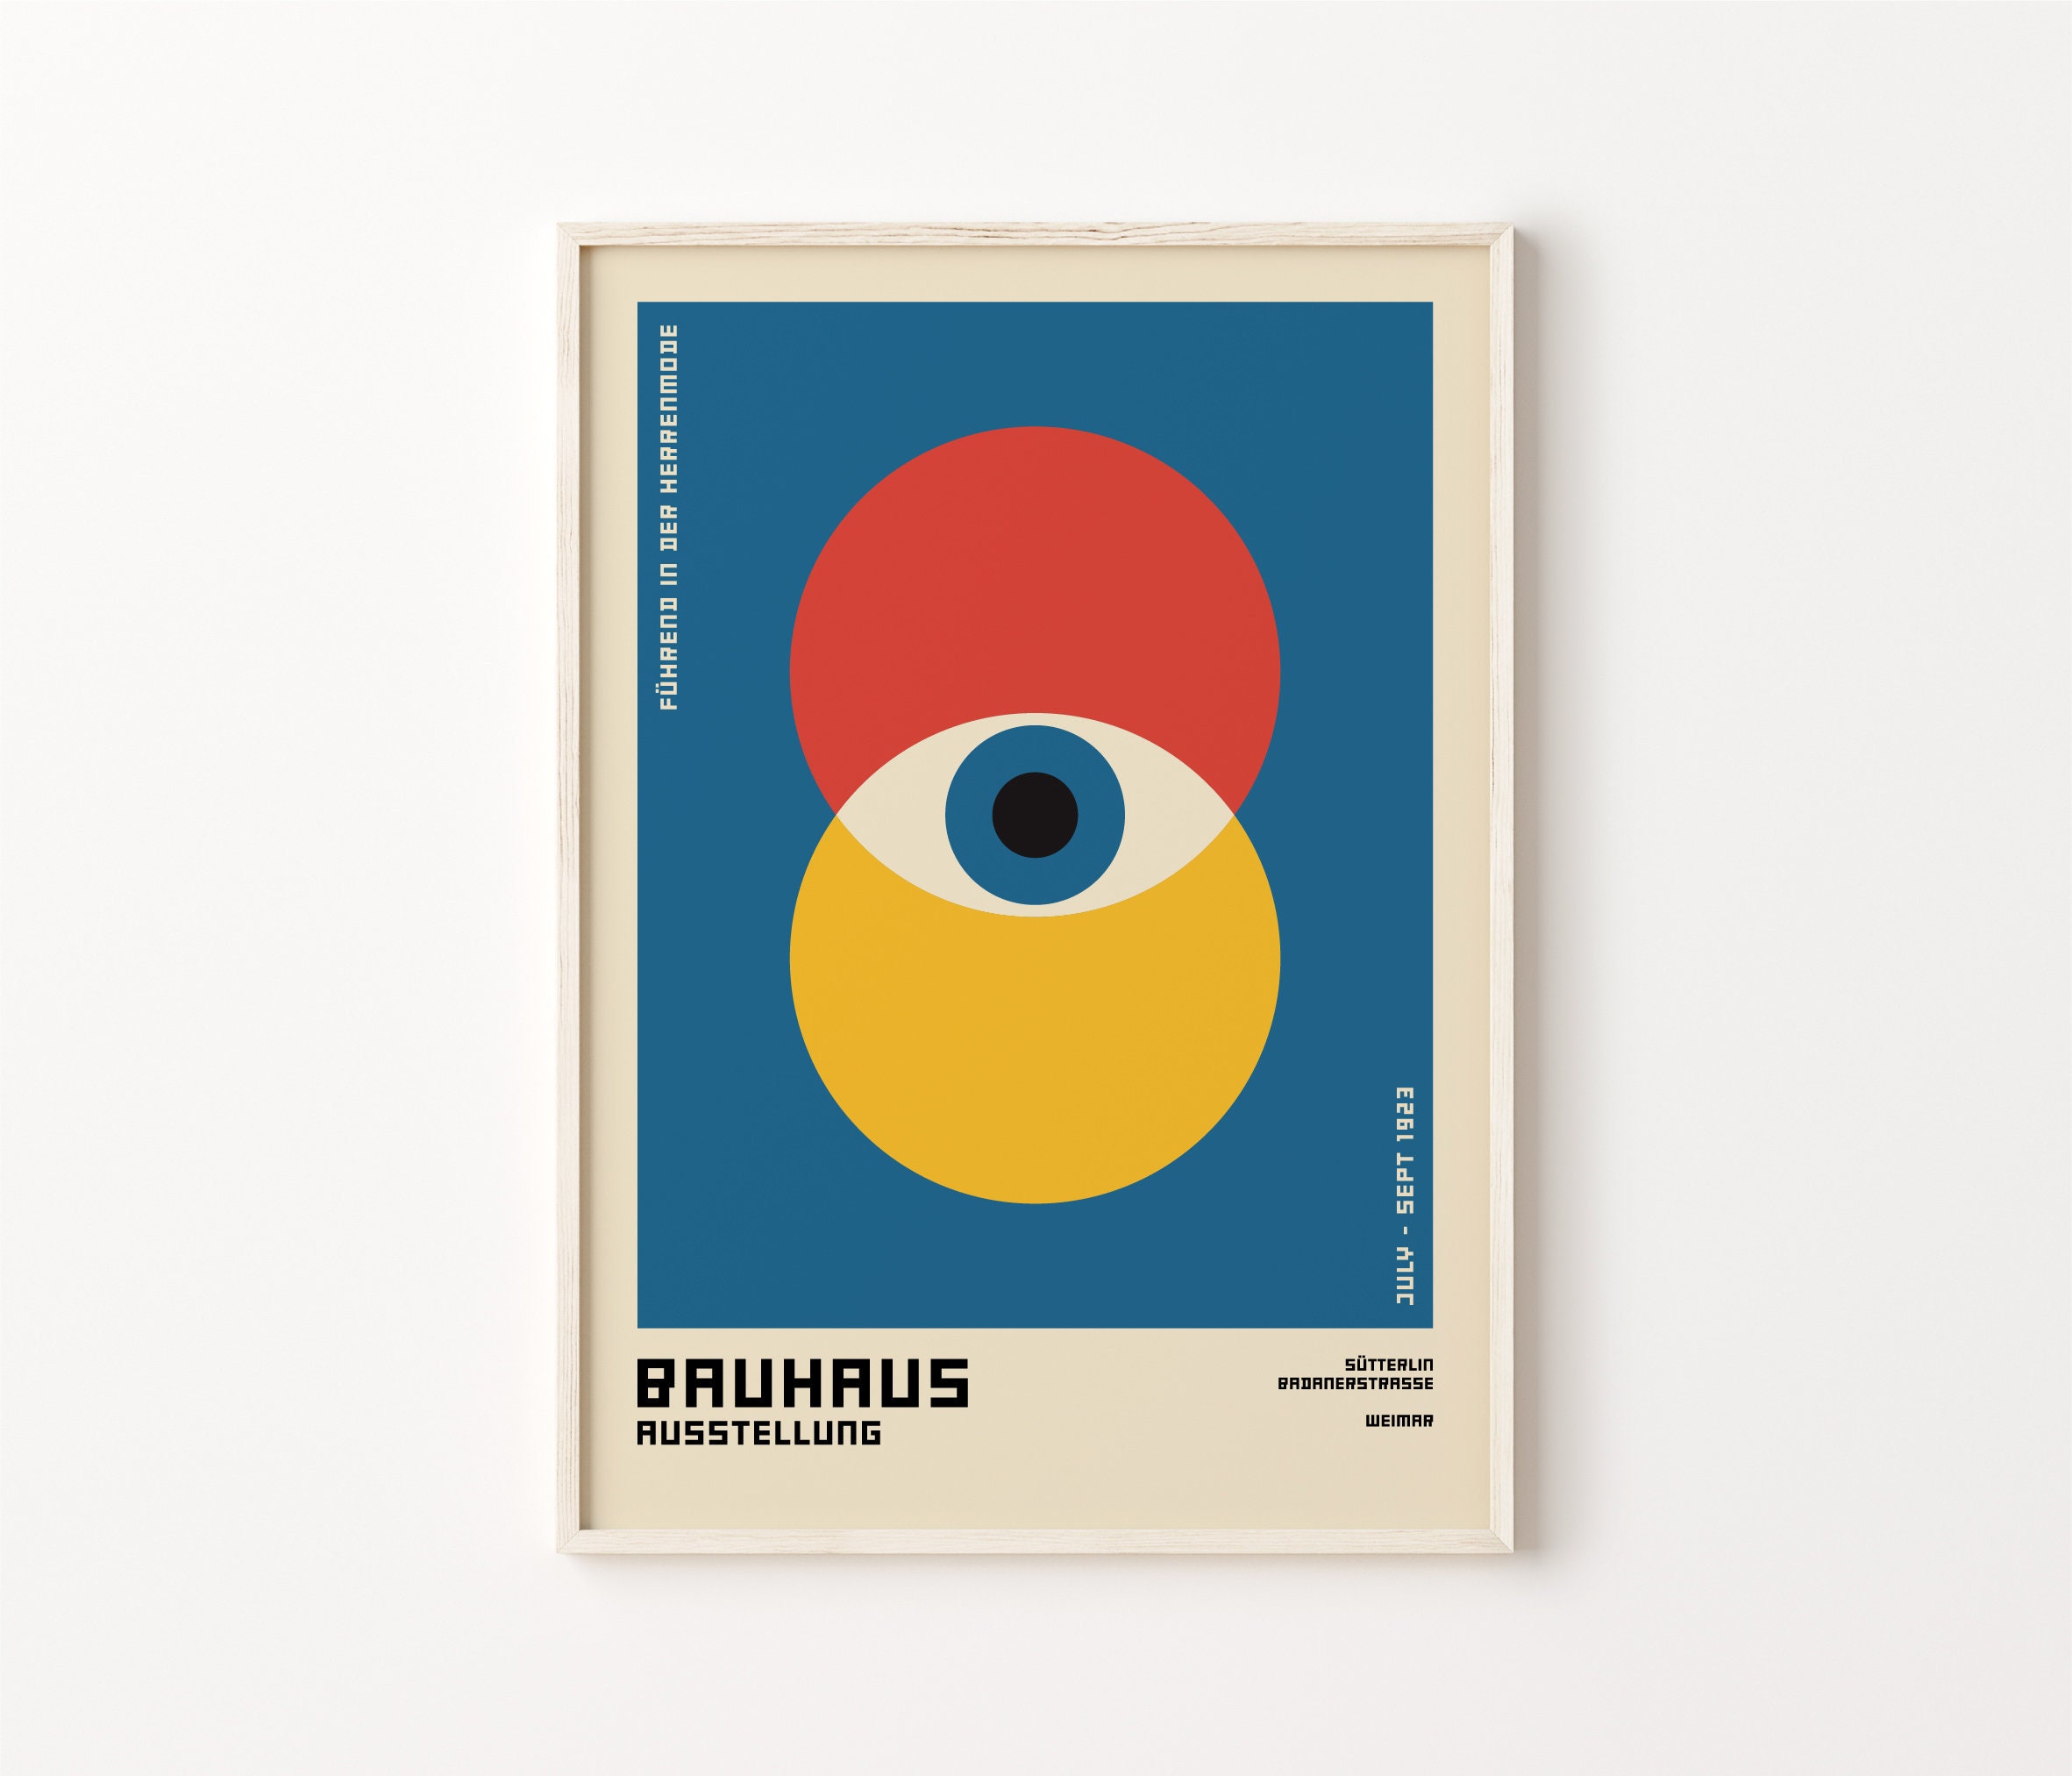 Bauhaus Exhibition Poster, Bauhaus Art Print, Bauhaus Eyes Poster